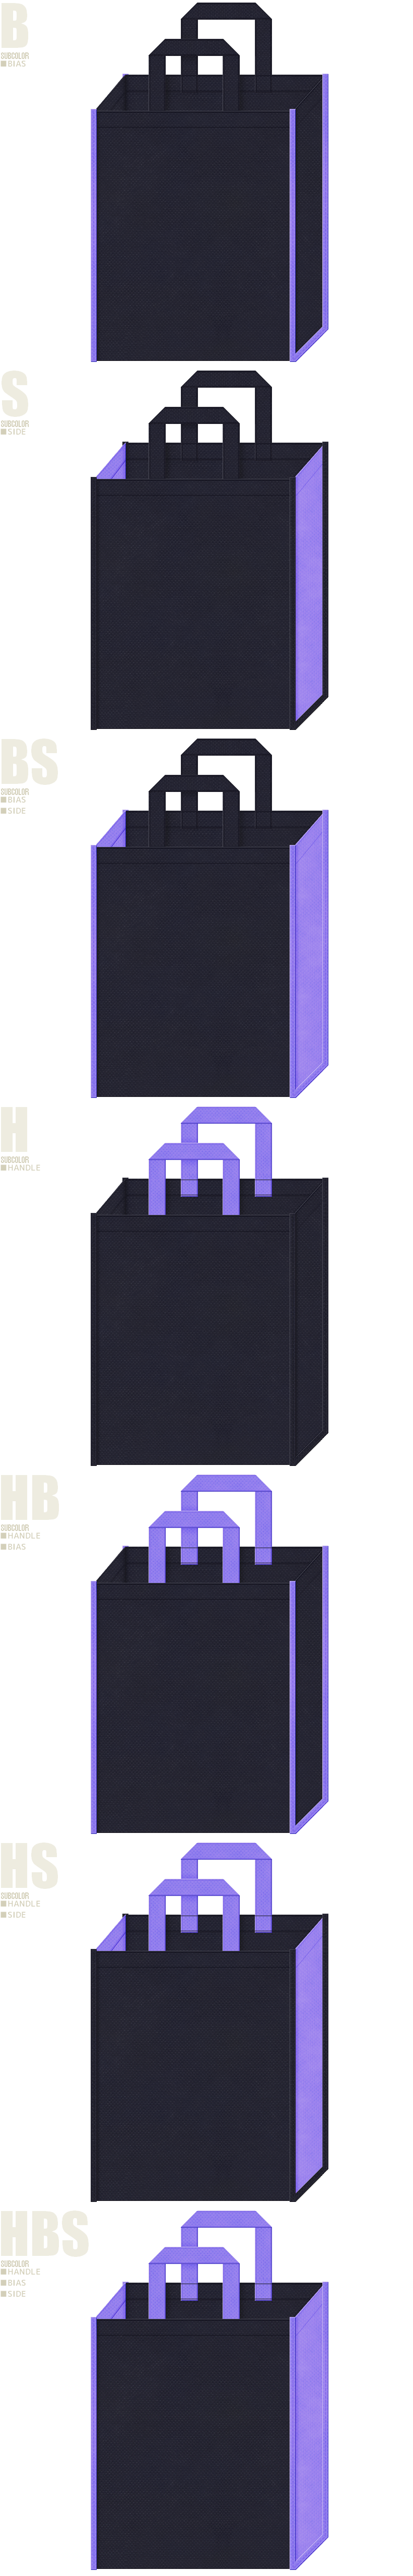 プラネタリウム・天体観測・星座・星占い・魔法・ギリシャ神話・ウィッグ・コスプレ・ゲームの展示会用バッグにお奨めの不織布バッグデザイン：濃紺色と薄紫色の配色7パターン